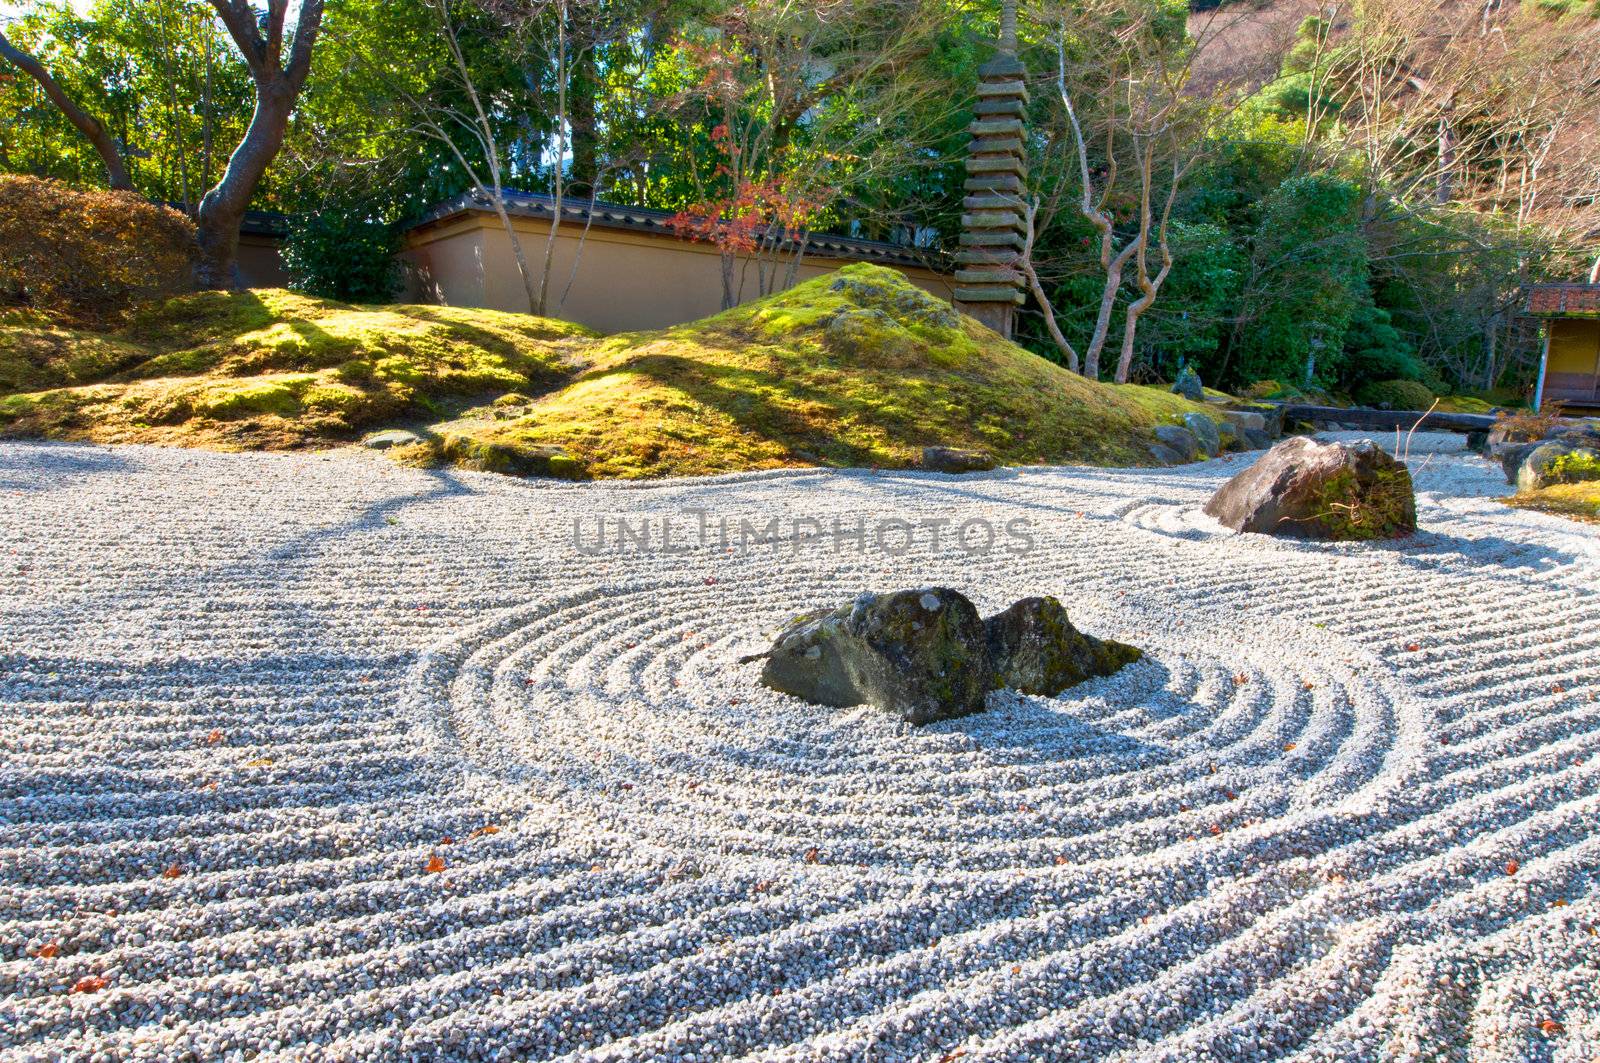 Zen stone garden at a sunny morning